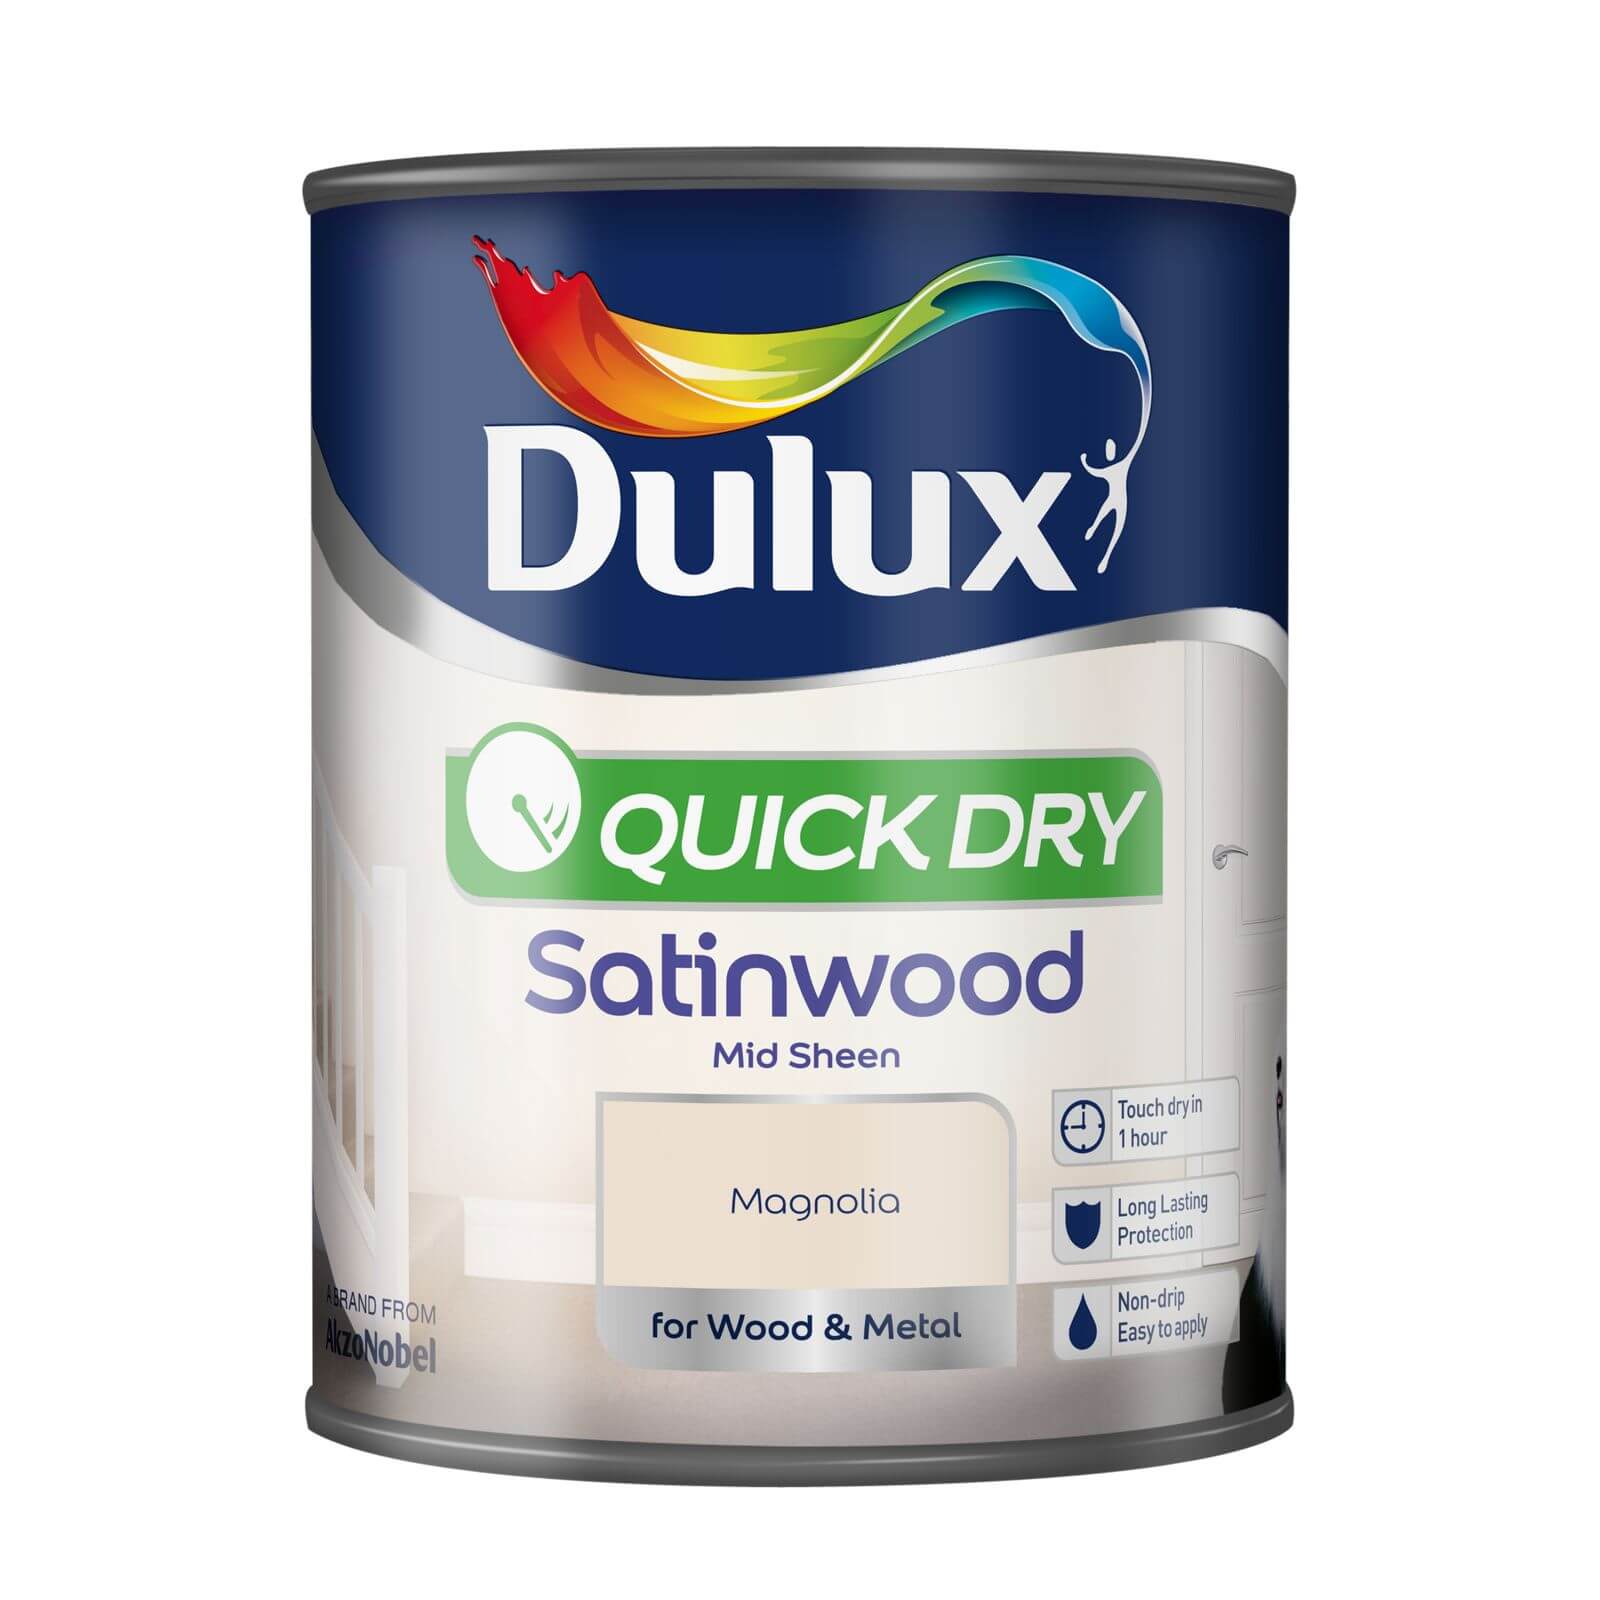 Dulux Quick Dry Satinwood Magnolia - 750ml